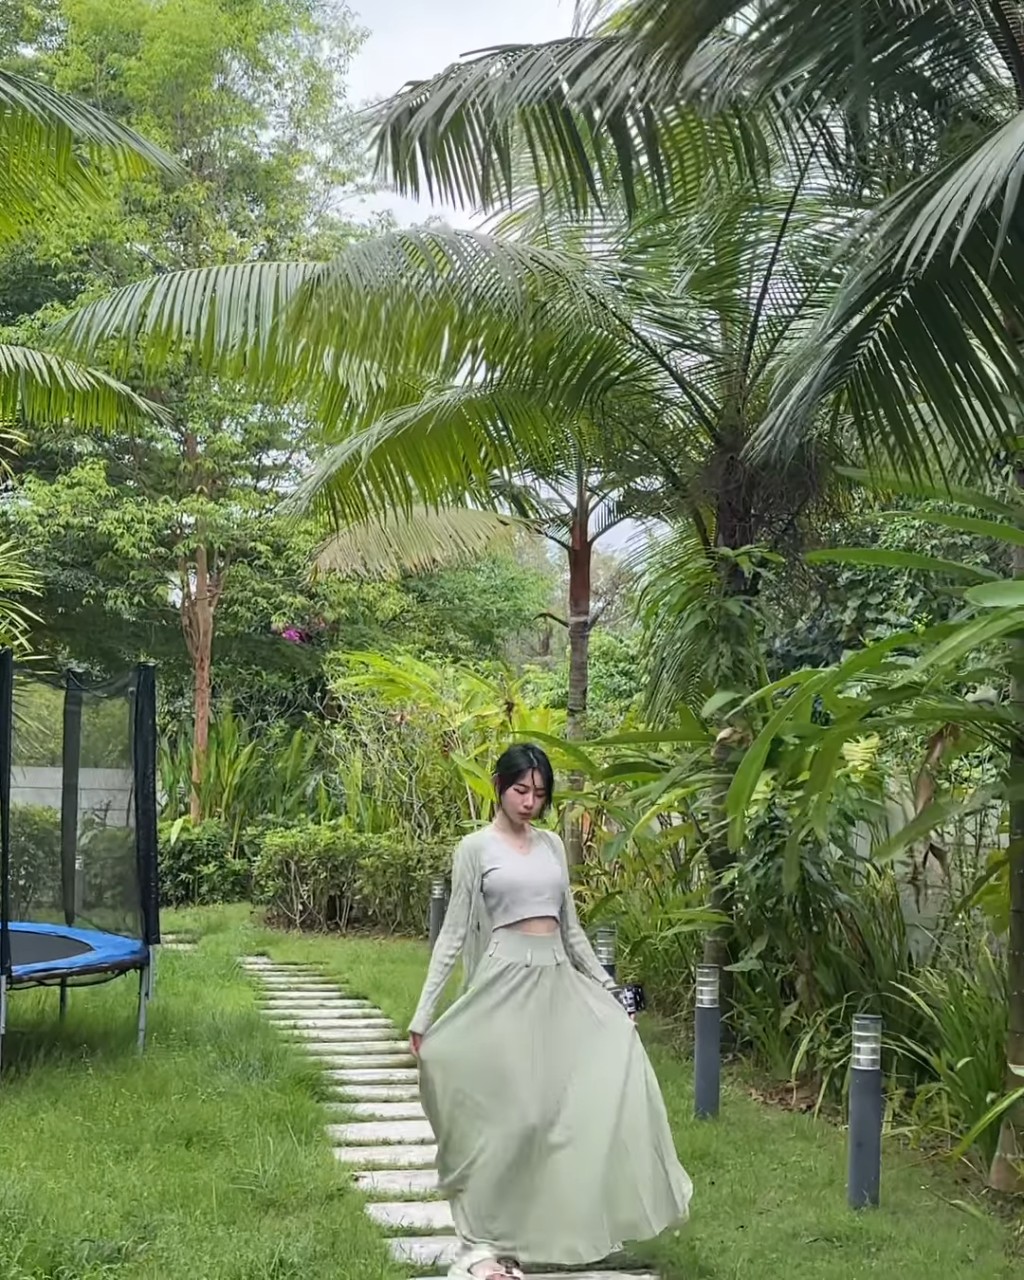 穿上浅绿色长裙的林明祯于花园内的石春路行Catwalk。